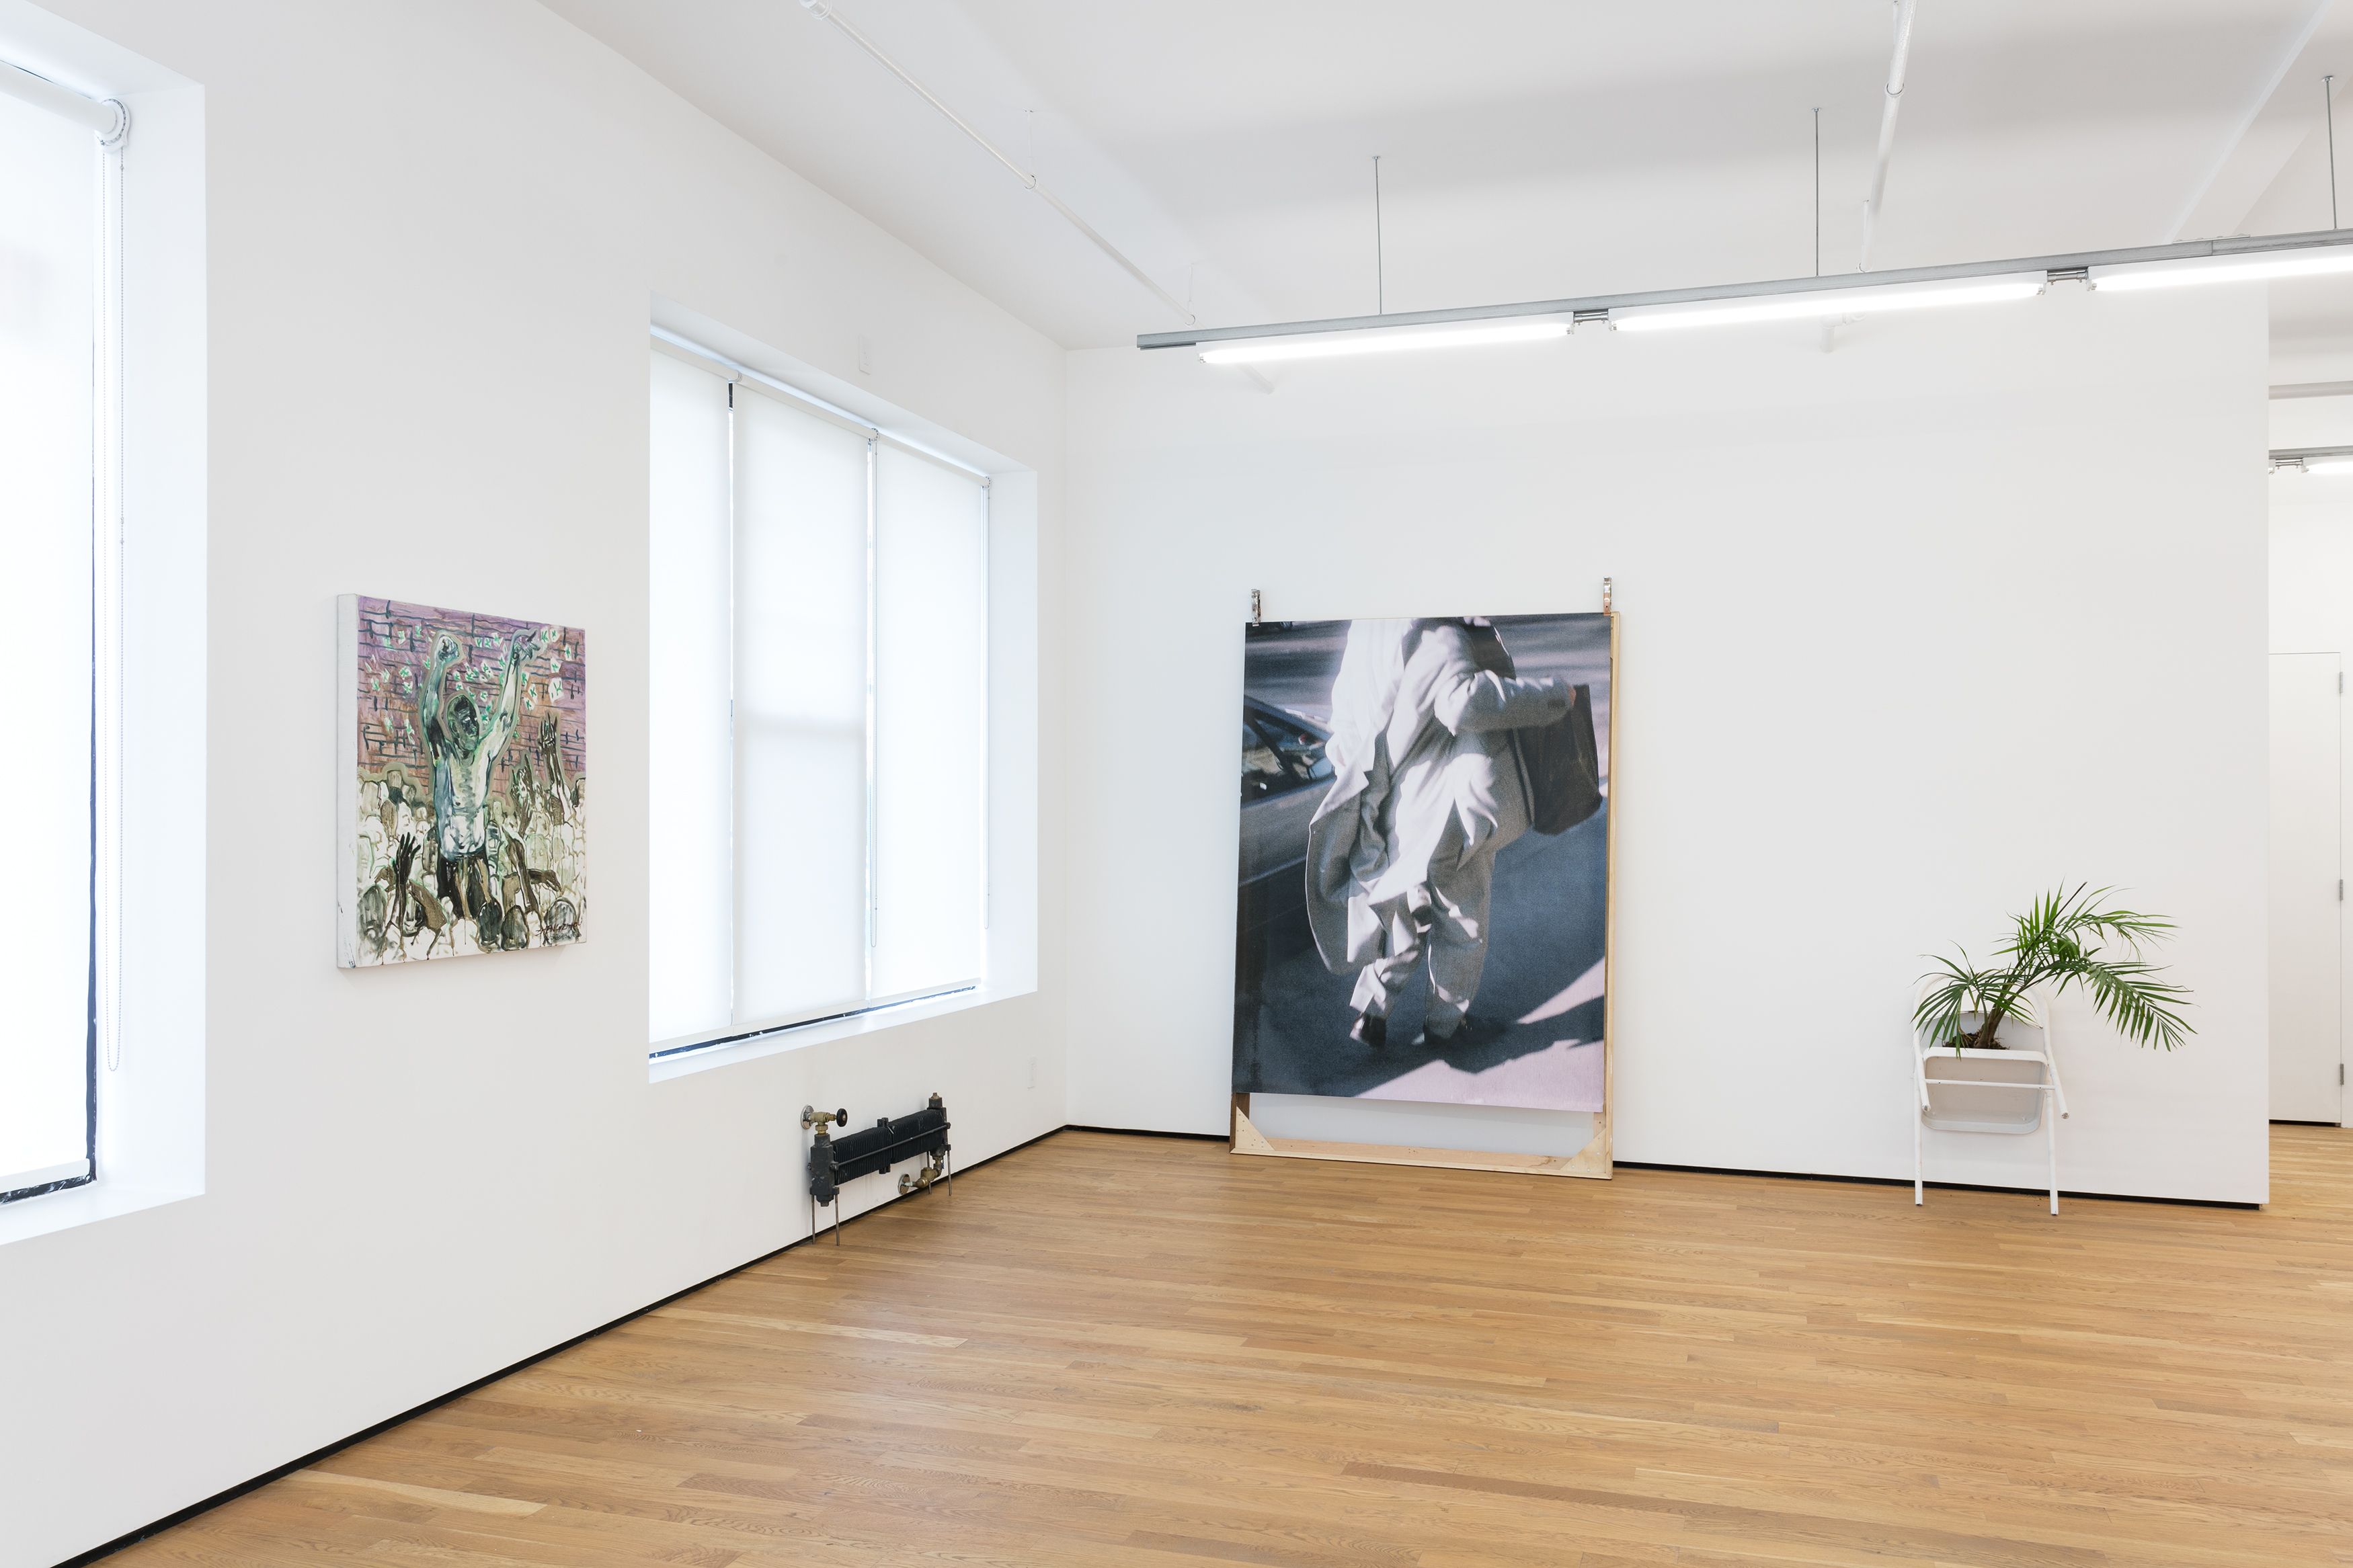 Installation view, Condo New York, 2018, Edouard Malingue Gallery, Hong Kong, Shanghai